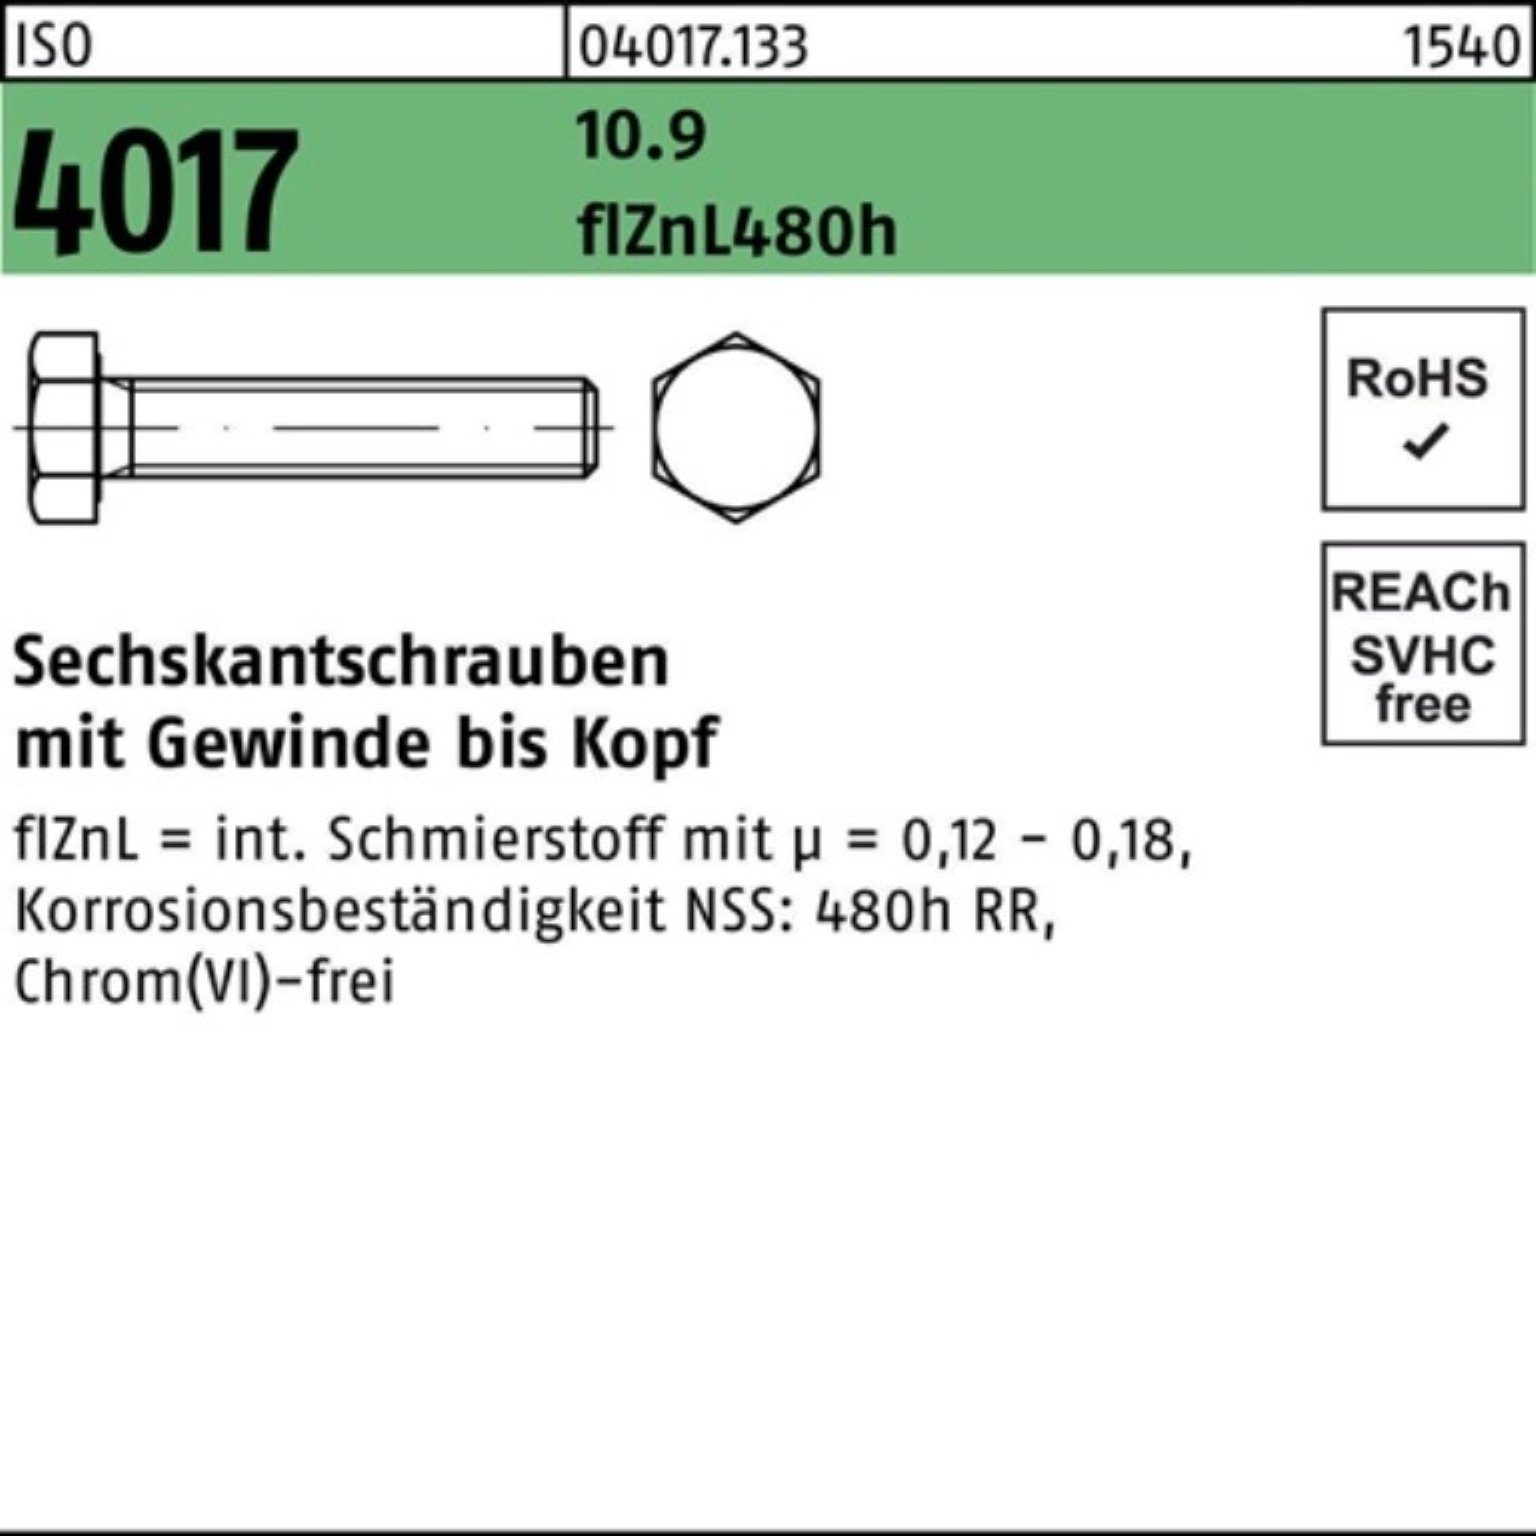 VG Sechskantschraube M12x 4017 zinklamellenb. 1 Pack 10.9 45 Sechskantschraube ISO 100er Bufab